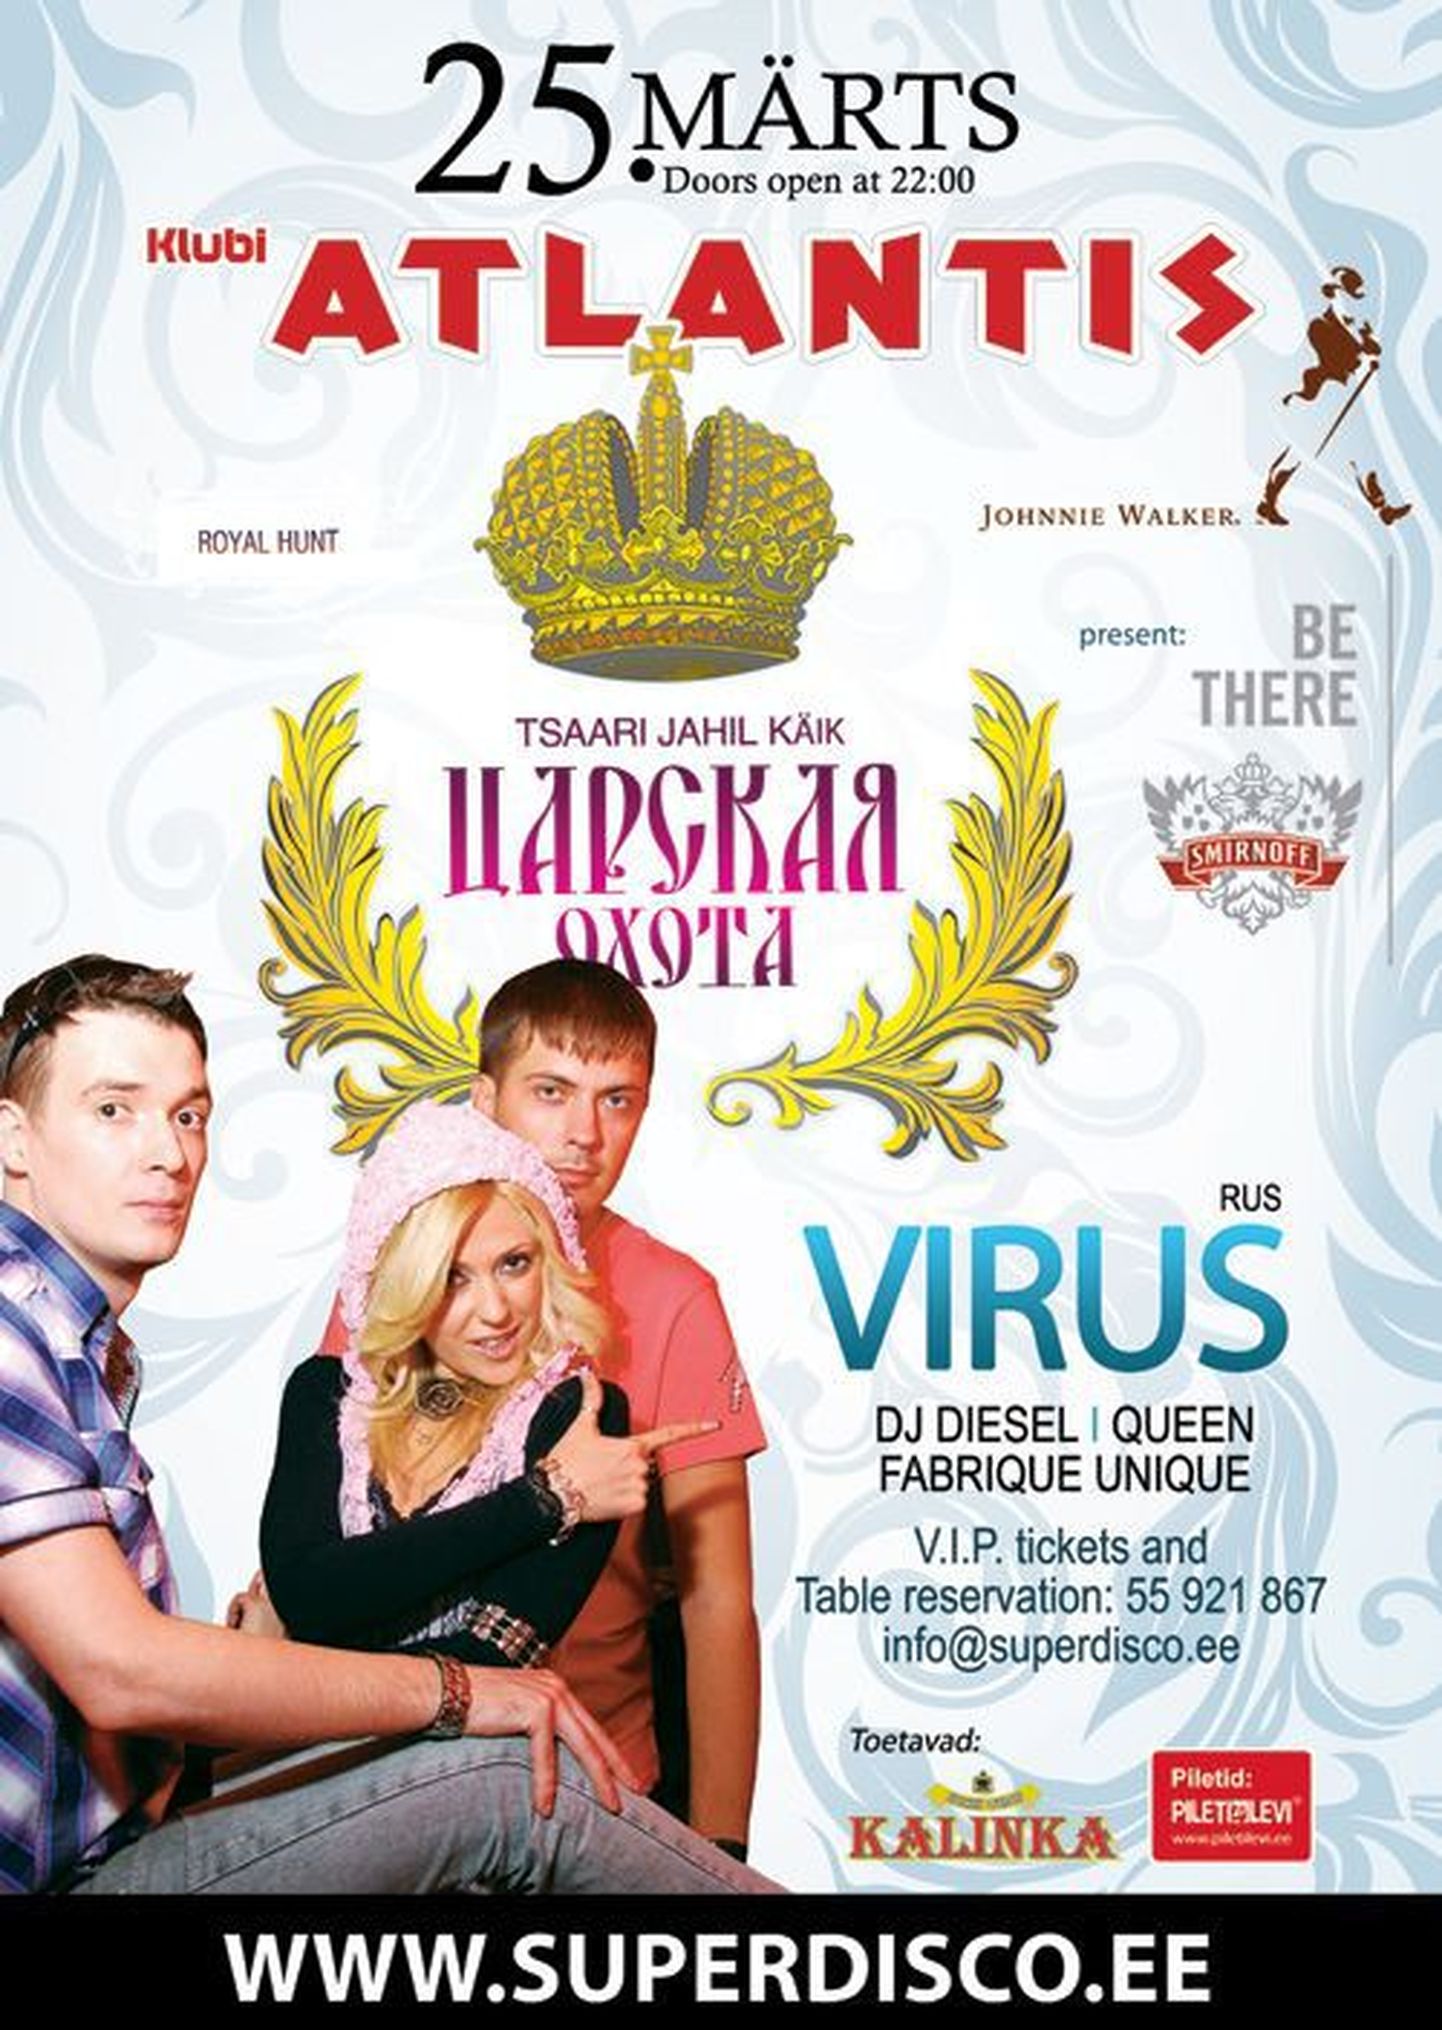 Club Atlantis toob lavale vene klubimuusikaprojekti Virus!